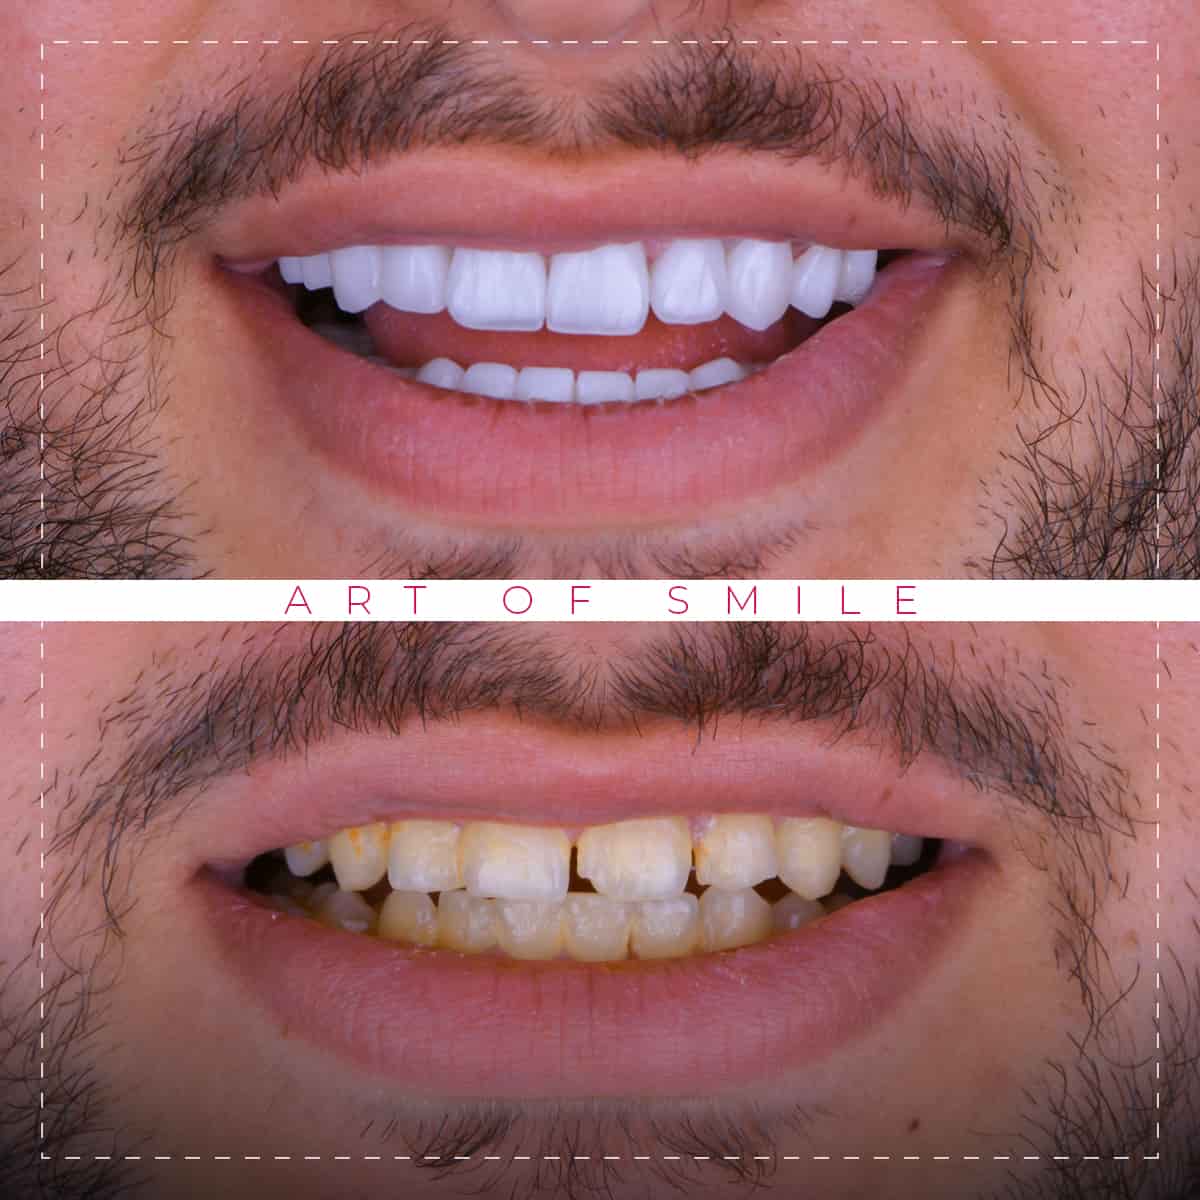 تجميل الاسنان قبل وبعد, تنظيف الاسنان, ابتسامة هوليود, زراعة اسنان